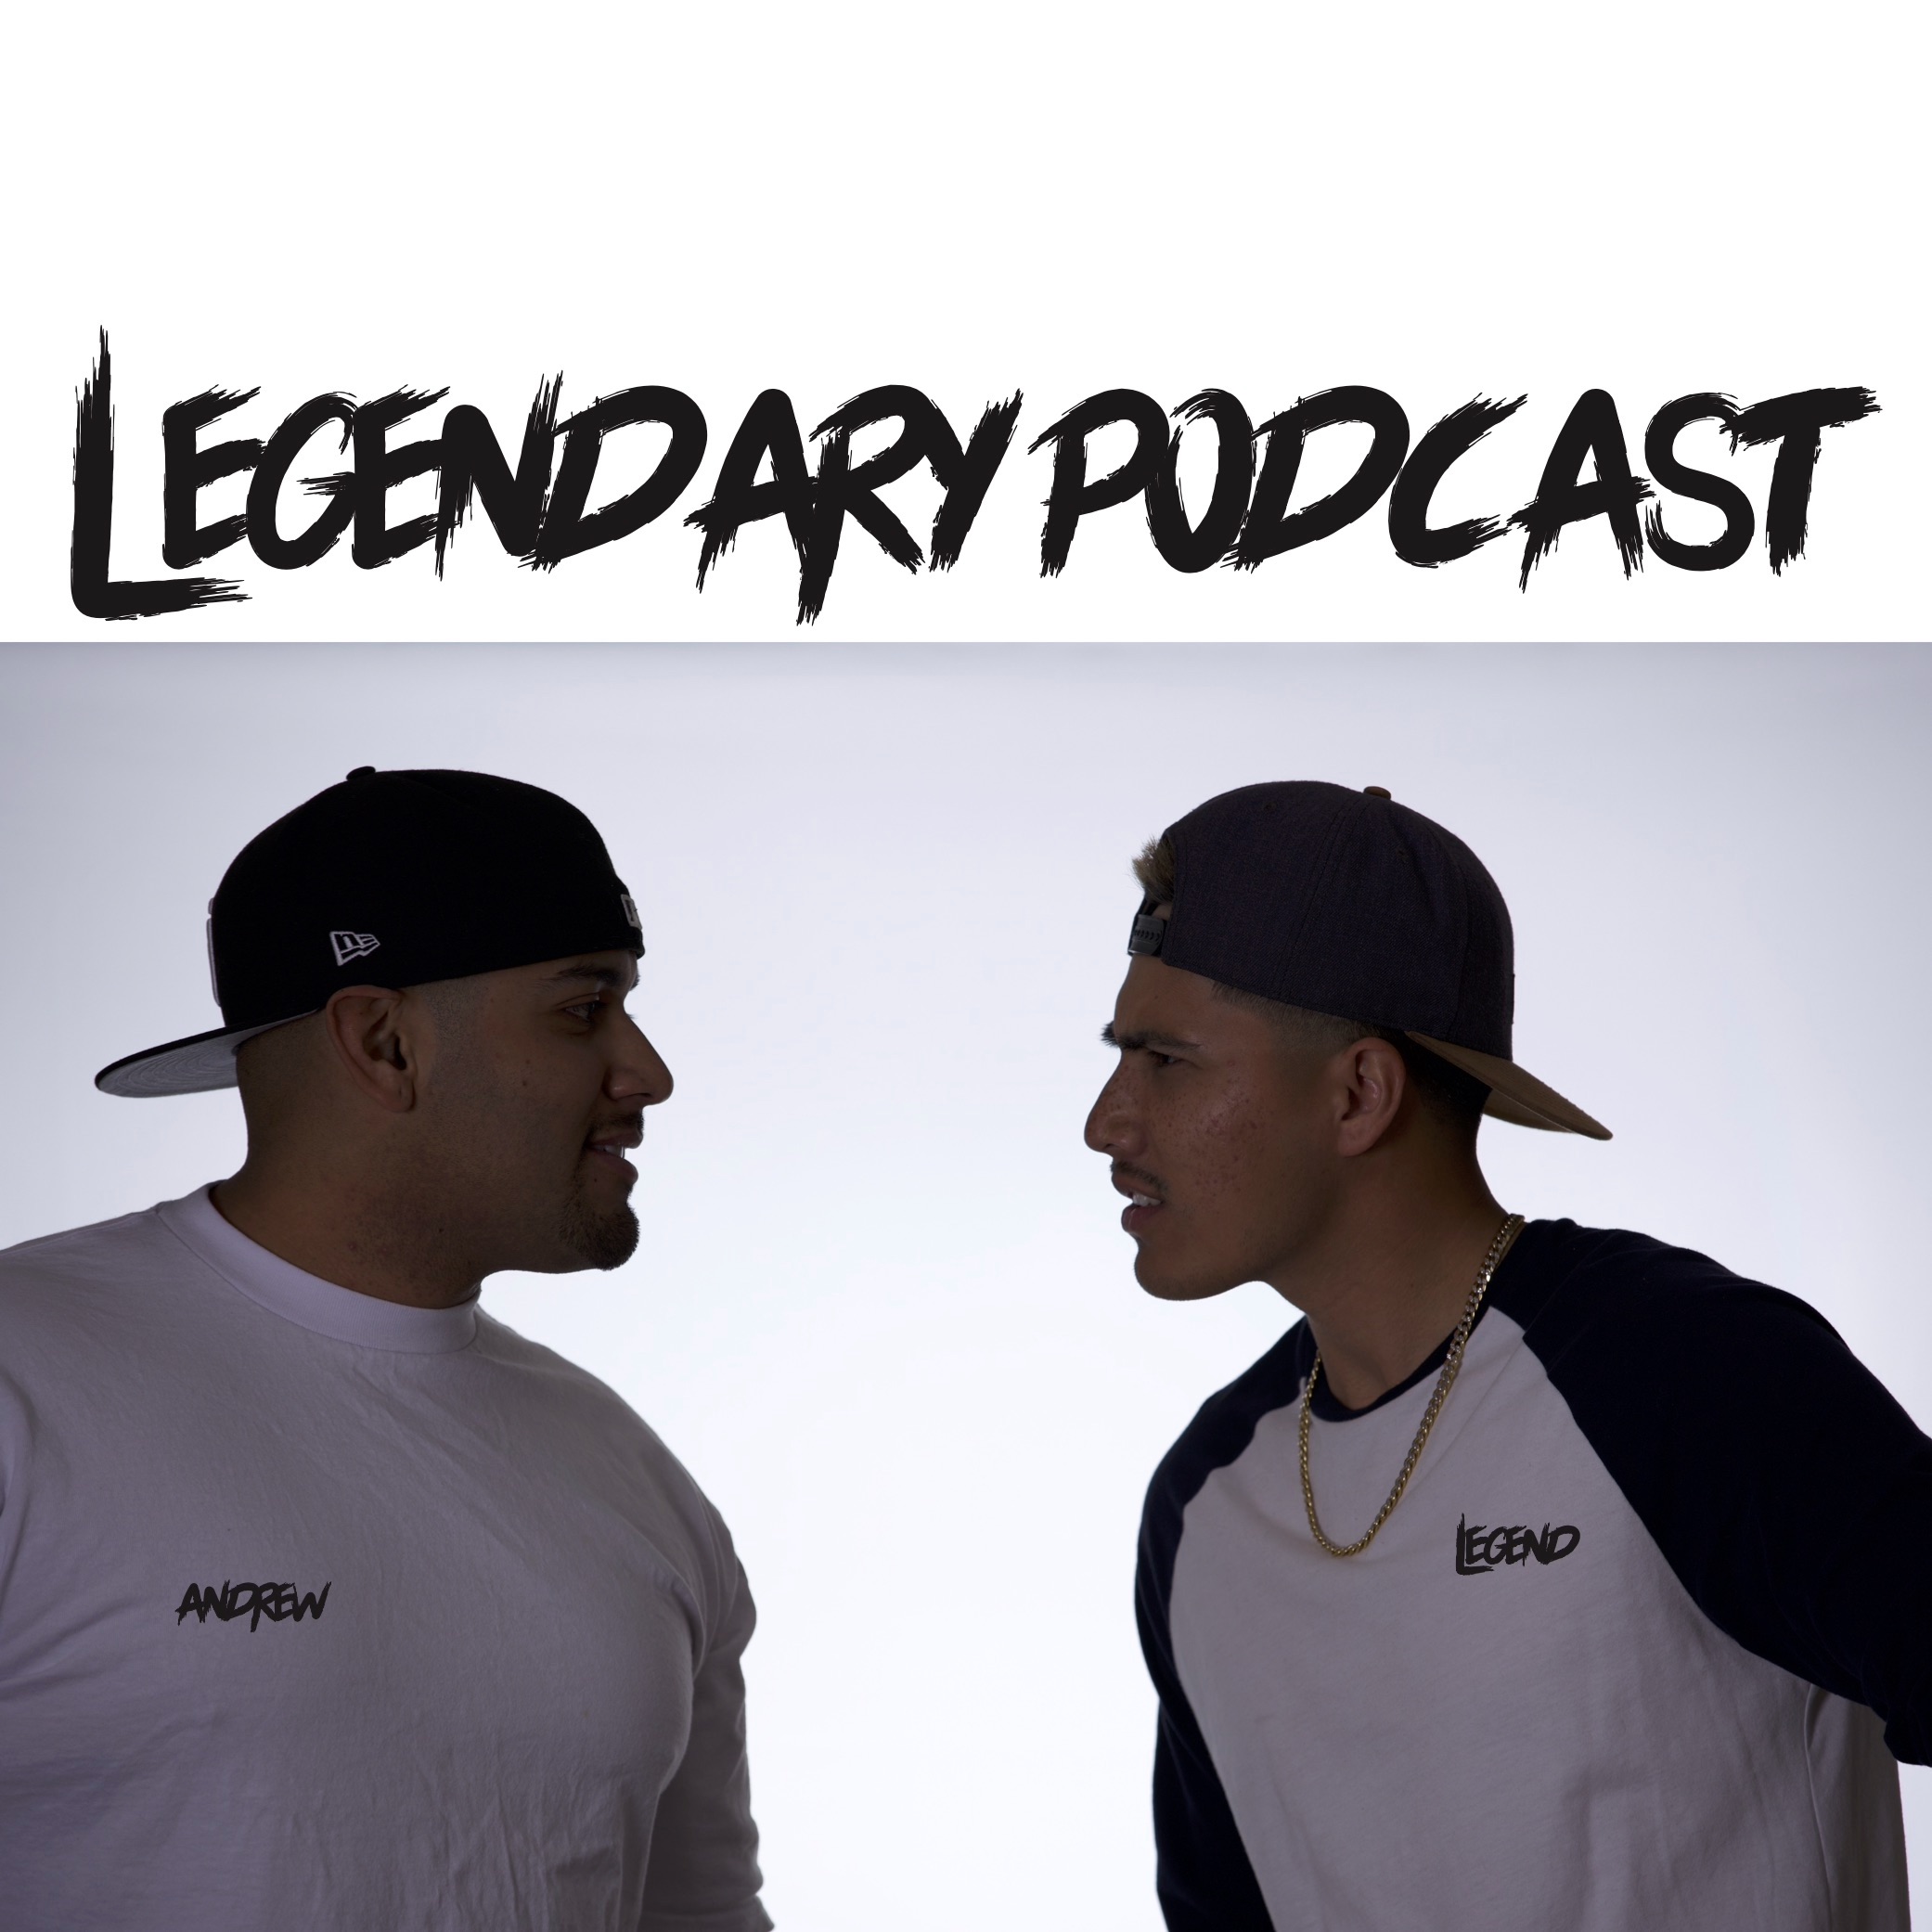 Legendary Podcast